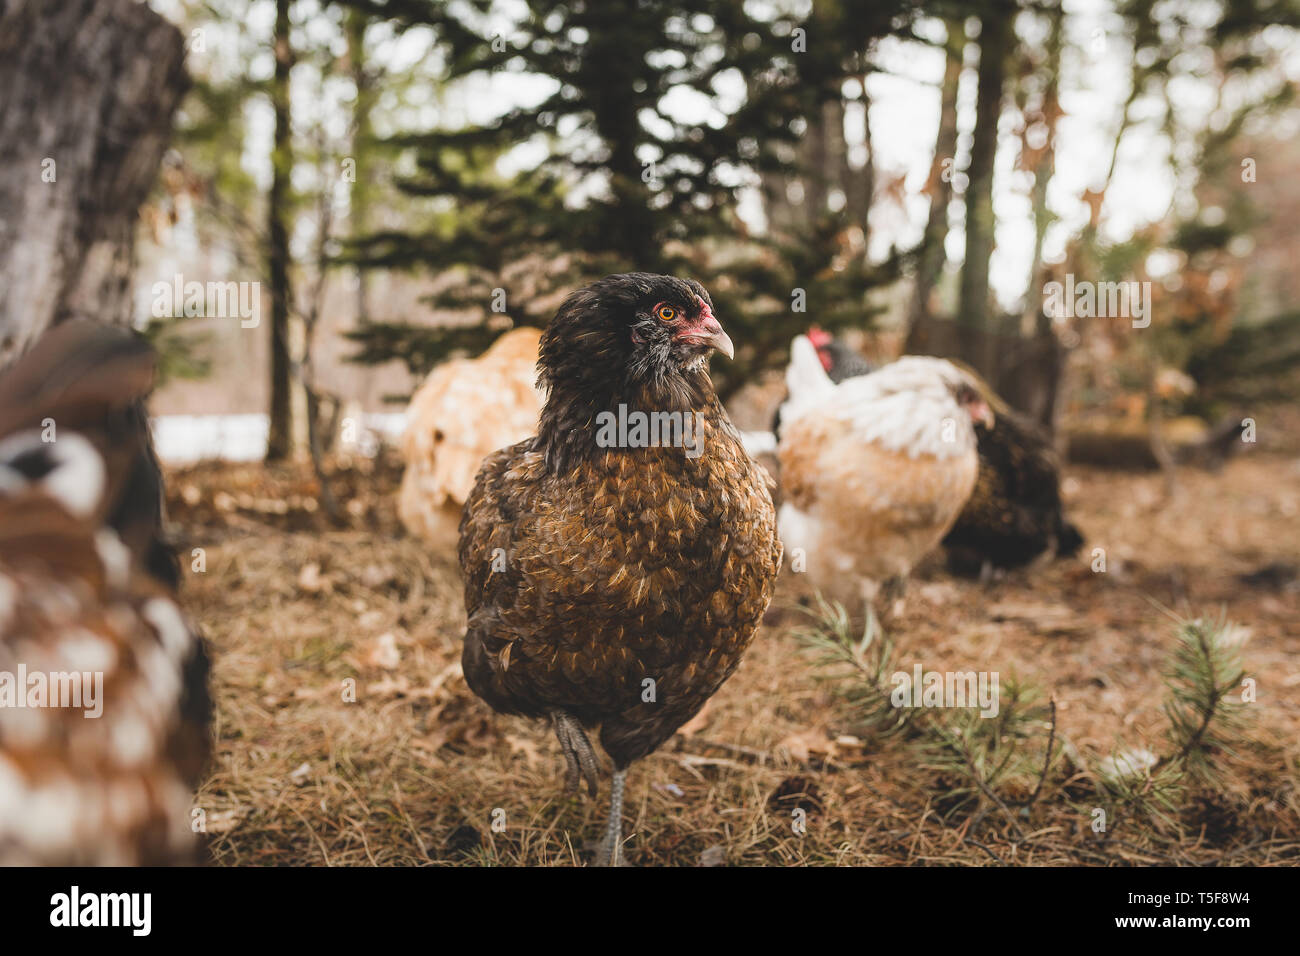 Black easter Egger Hen free che va in erba con altre galline Foto Stock